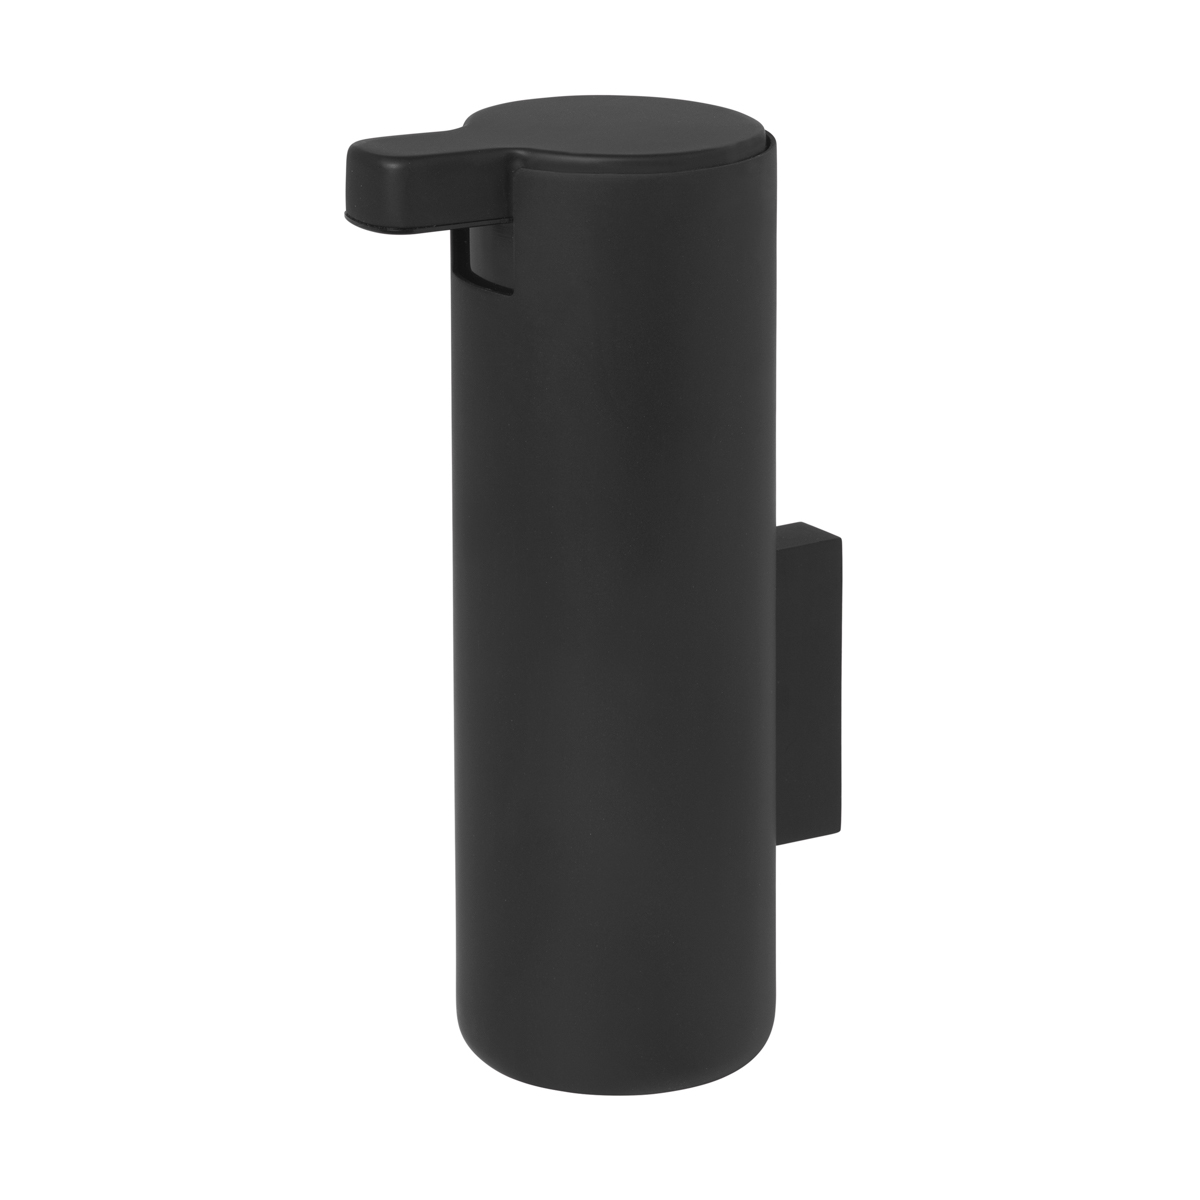 Seifenspender -MODO- Black mit Wandmontage 165 ml, Ø 5,5 cm. Material: Stahl Titanbeschichtet, Gummi, Kunststoff. Von Blomus.